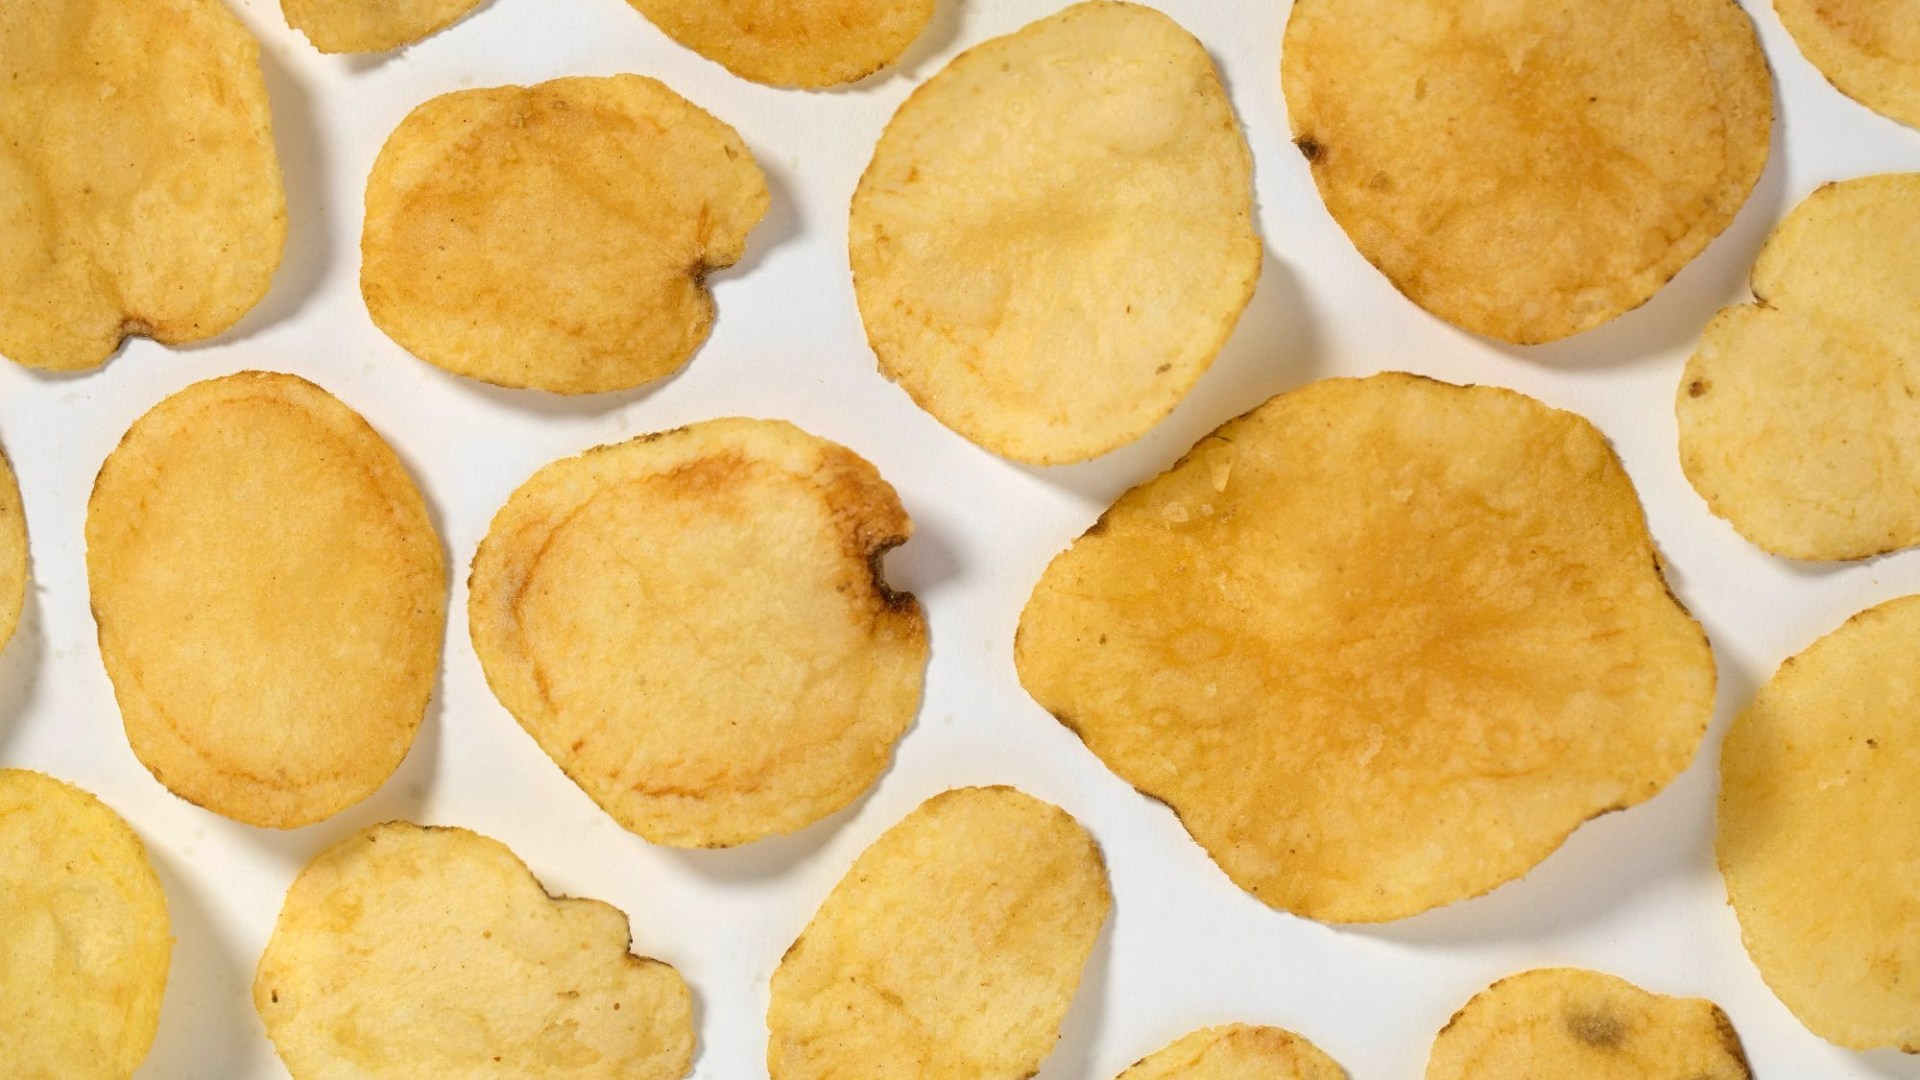 Asda emite una advertencia urgente de “no comer” tras retirar patatas fritas por temor a que supongan un “posible riesgo para la salud”